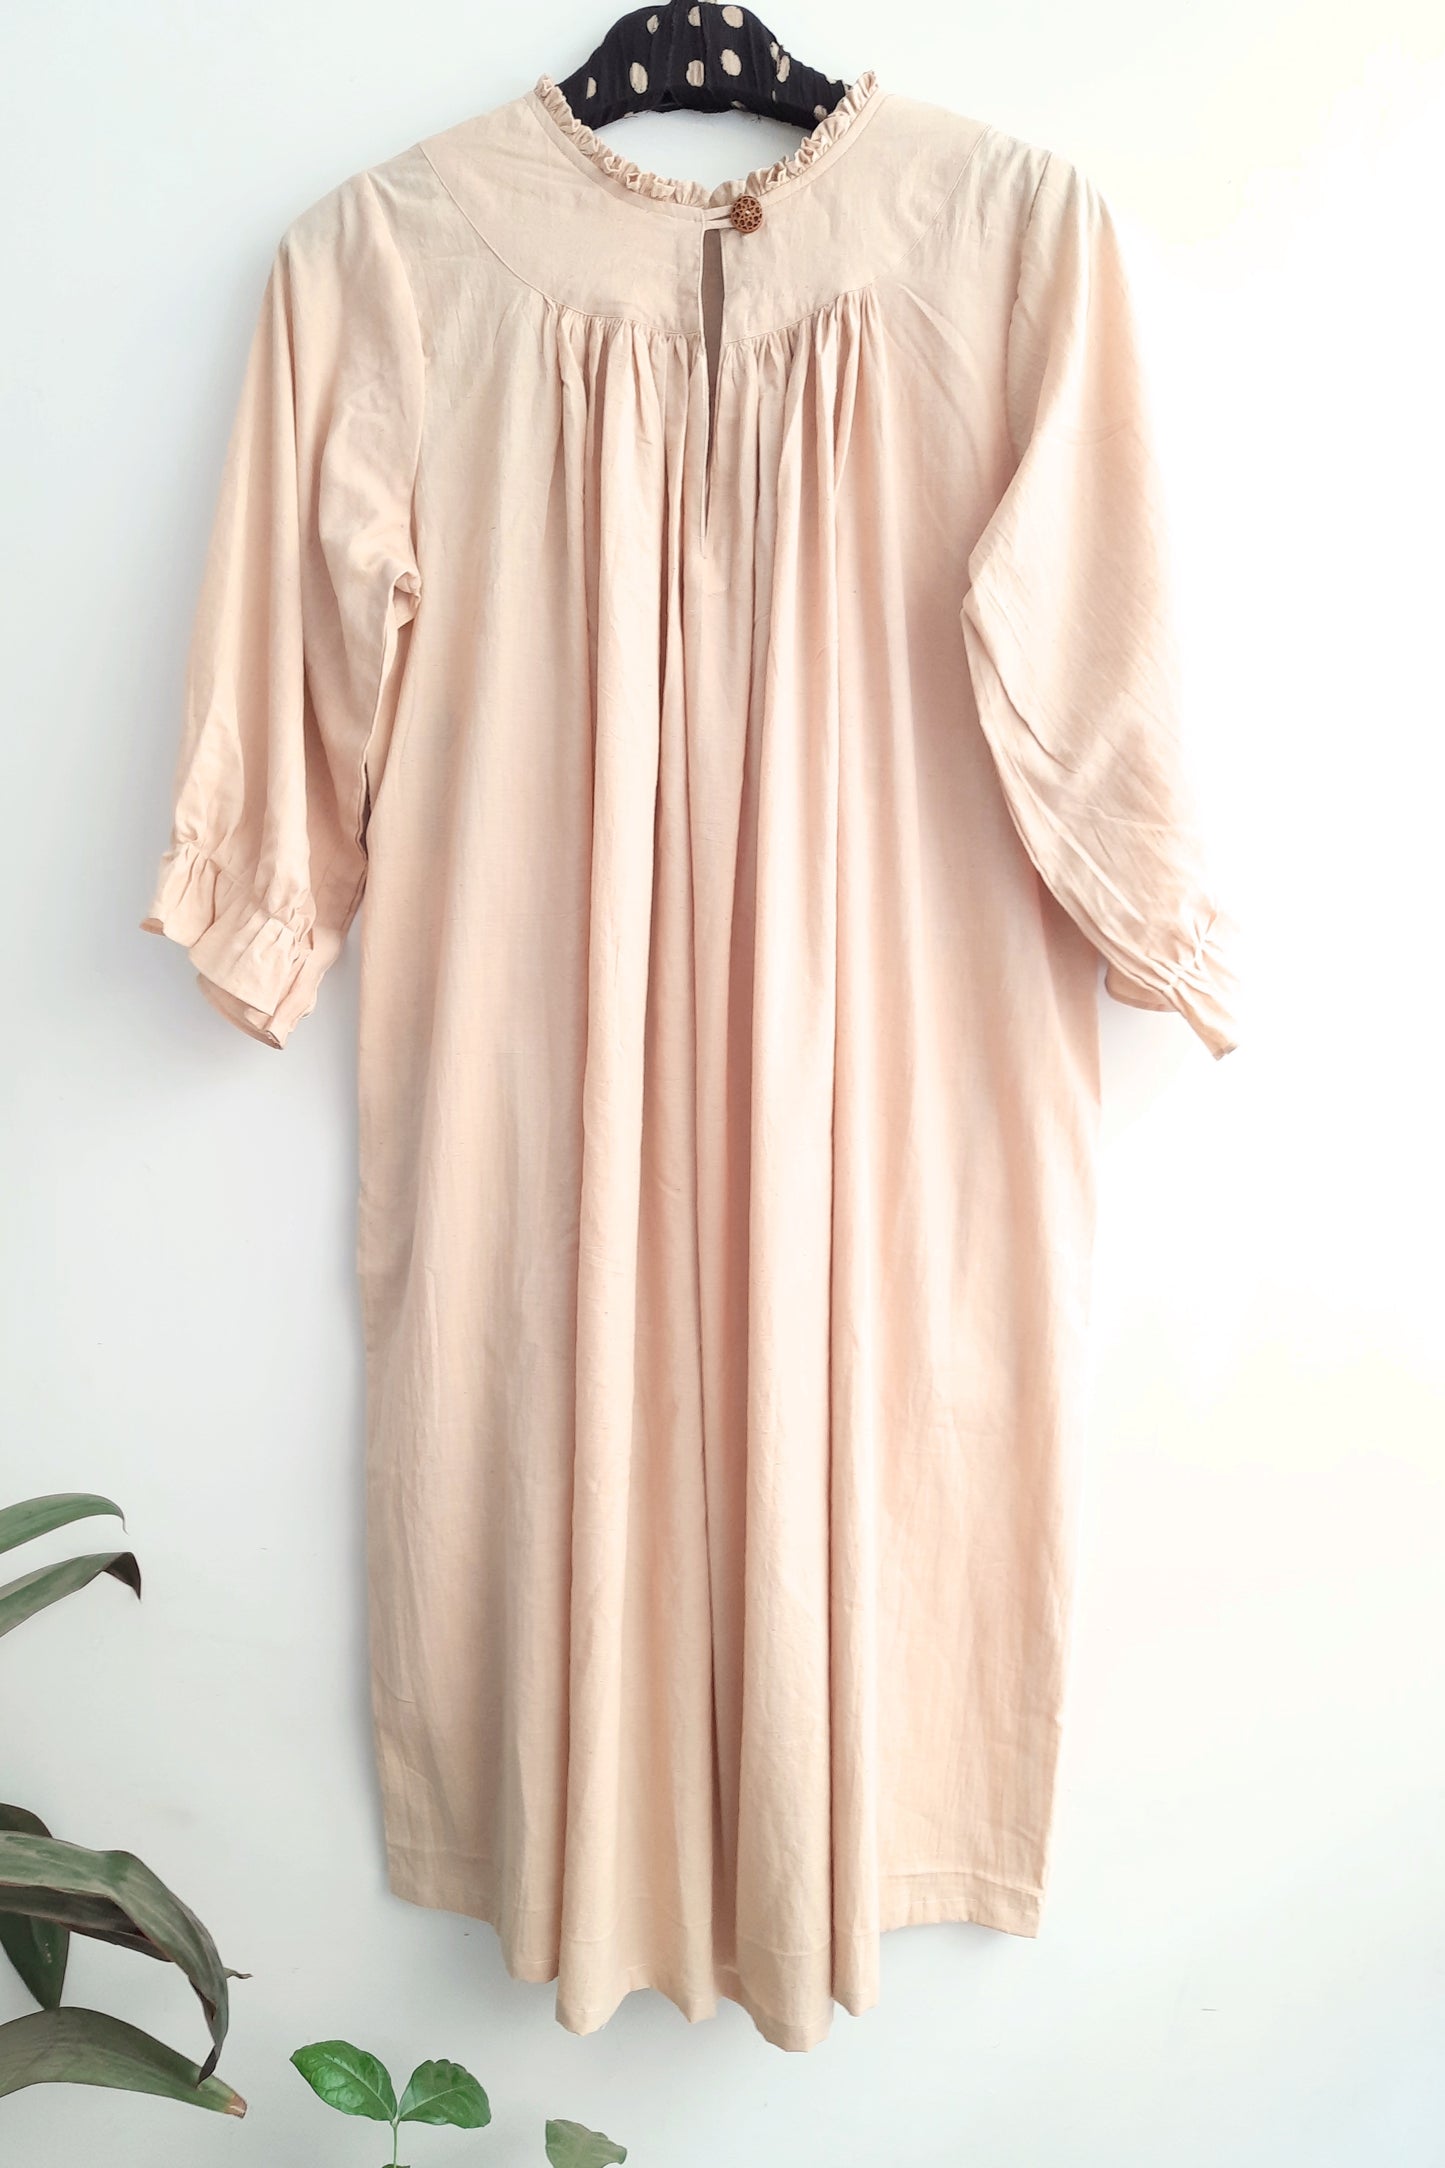 Sublime Sands: Artfully Designed Beige Dress